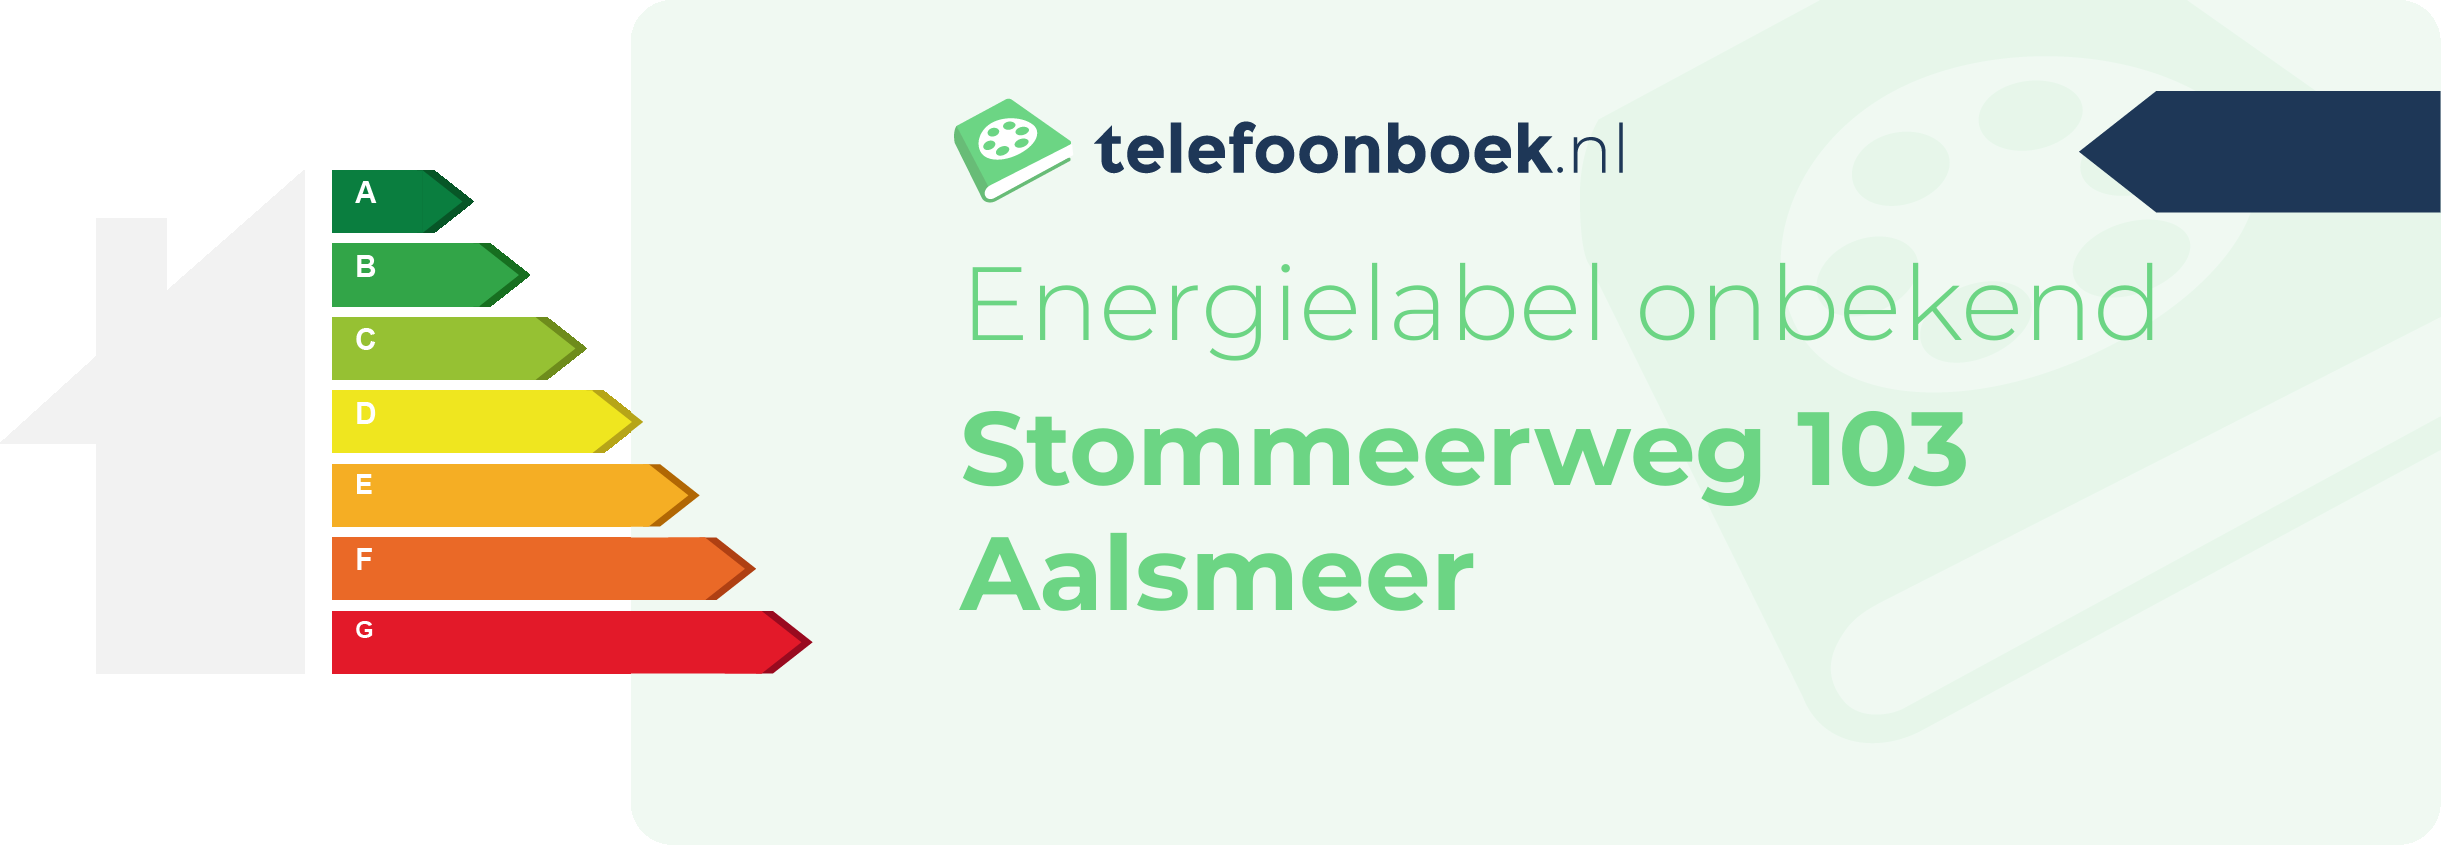 Energielabel Stommeerweg 103 Aalsmeer